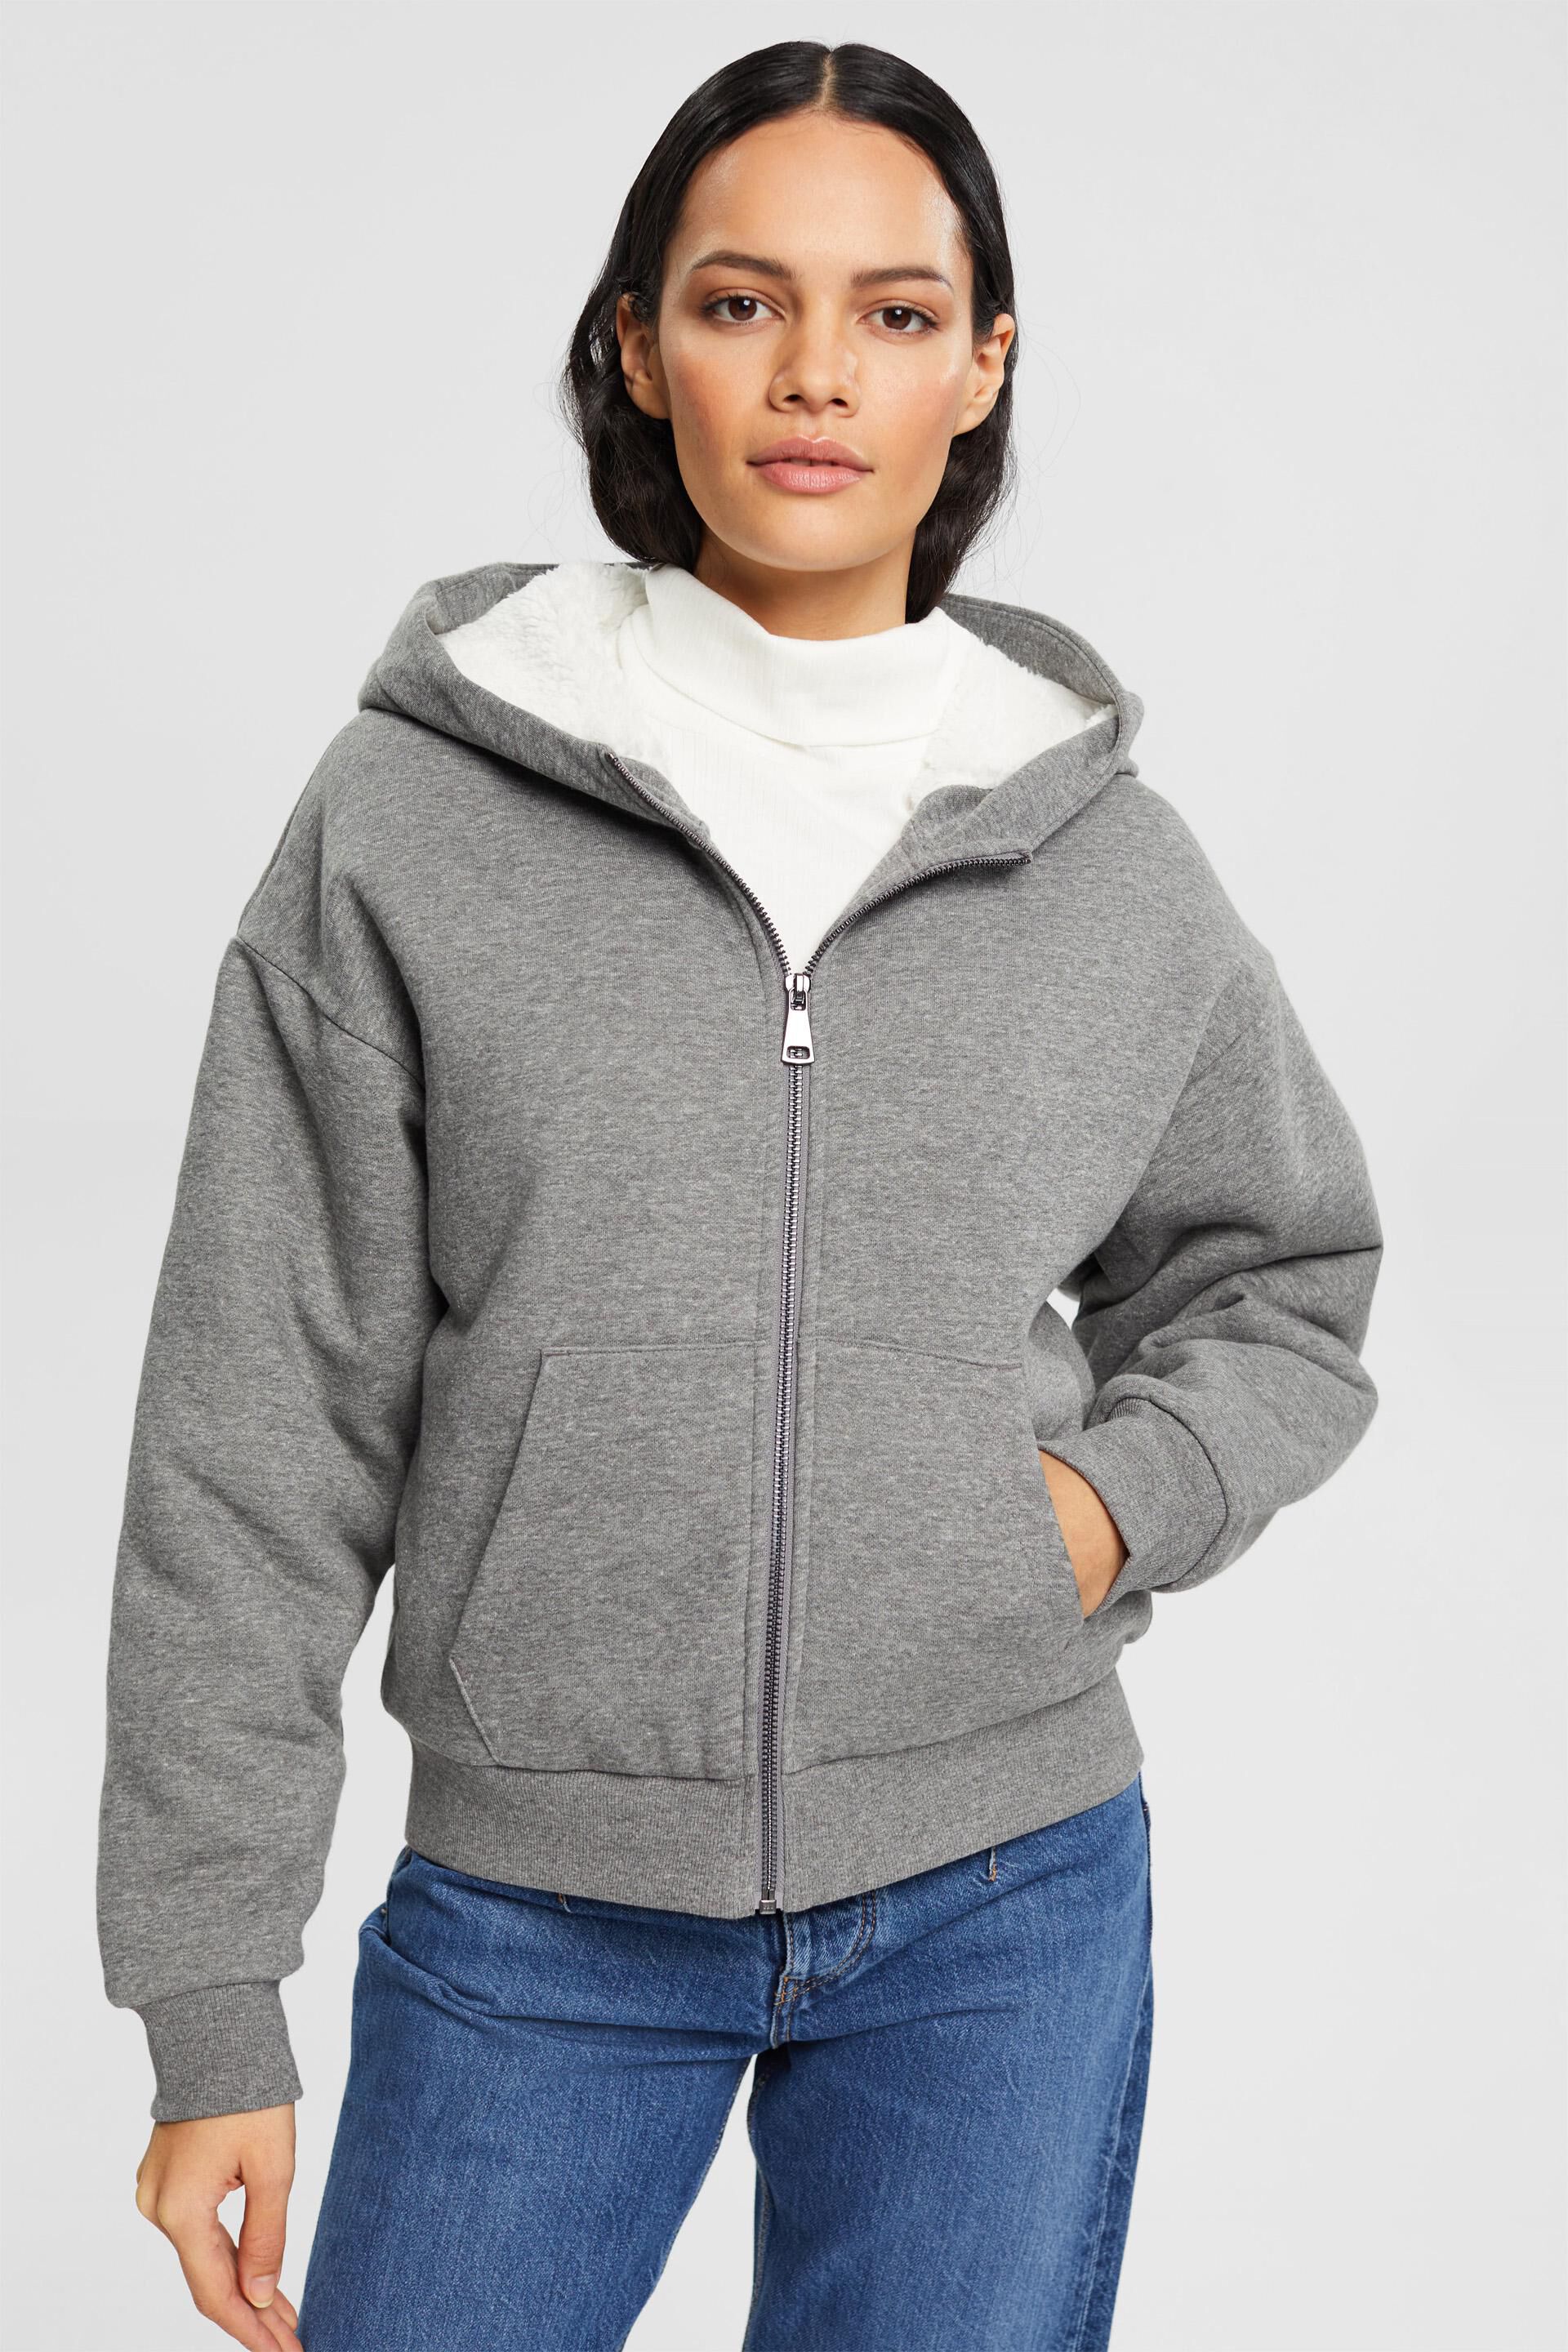 BUKINIE Womens Sherpa Pullover Fuzzy Fleece Hoodies Sweatshirt Oversized Pockets Hooded Plush Sweater Jumper Outwear 